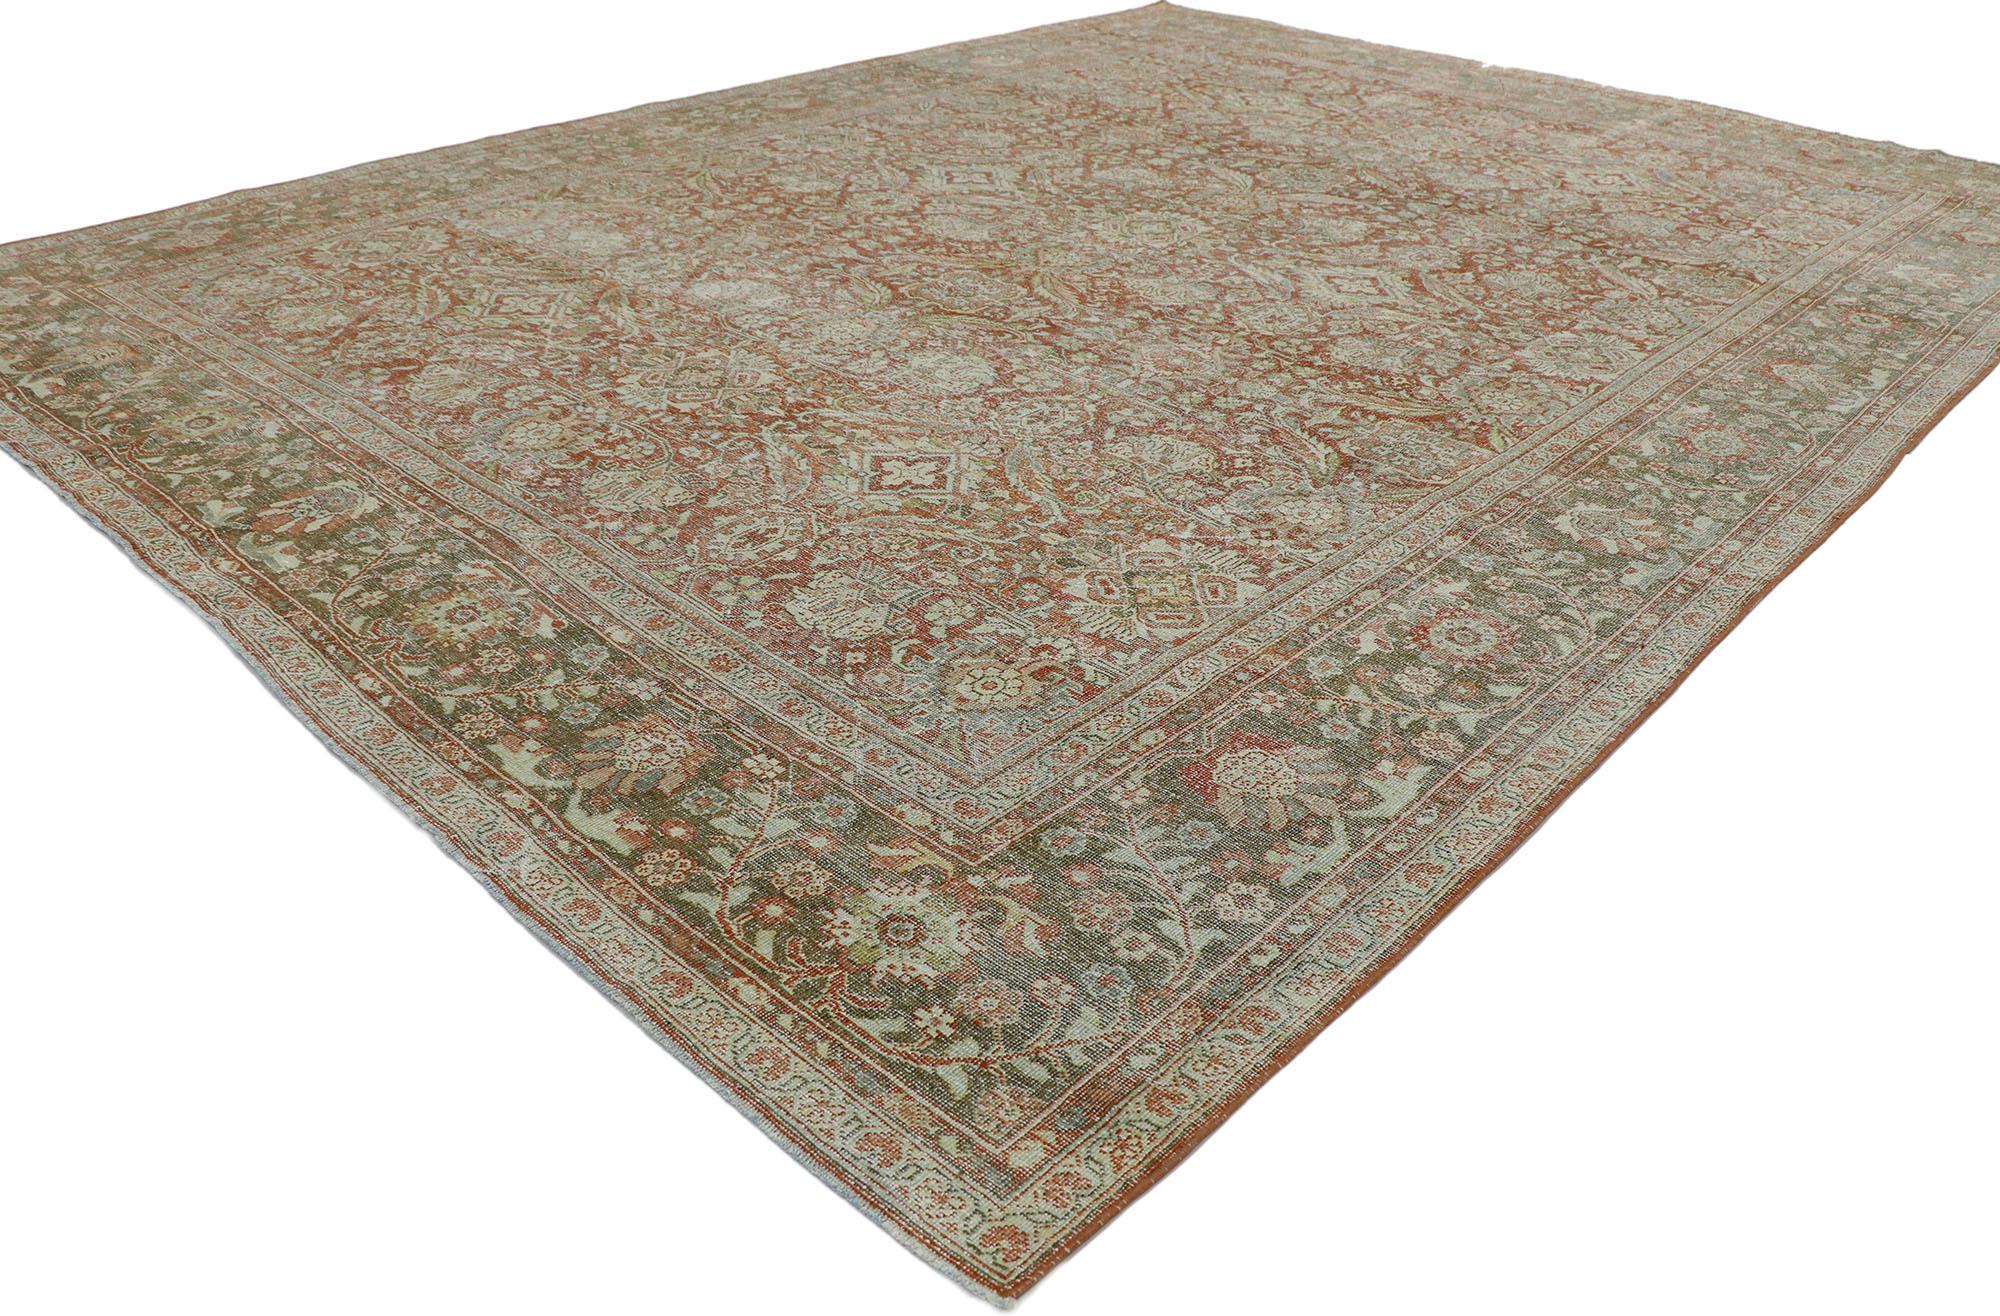 53232, tapis persan Mahal ancien et usé, de style colonial américain rustique. Affichant une symétrie bien équilibrée et une esthétique simple, ce tapis Persan Mahal ancien en laine nouée à la main et en mauvais état incarne magnifiquement le style